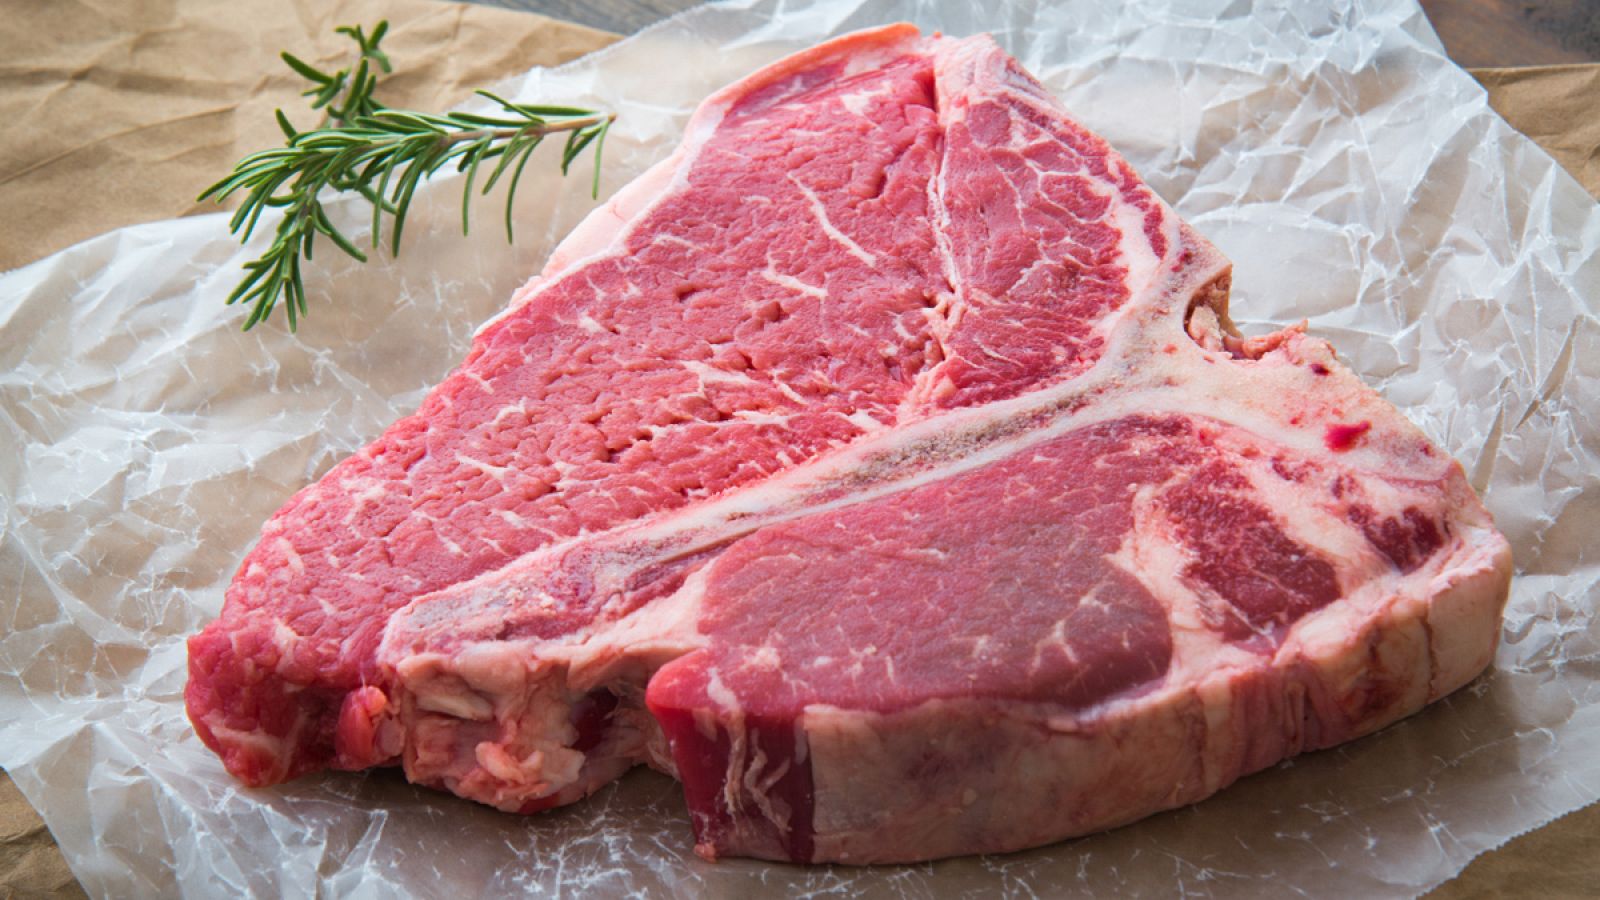 El consumo excesivo de carne roja supone un riesgo para la salud humana.